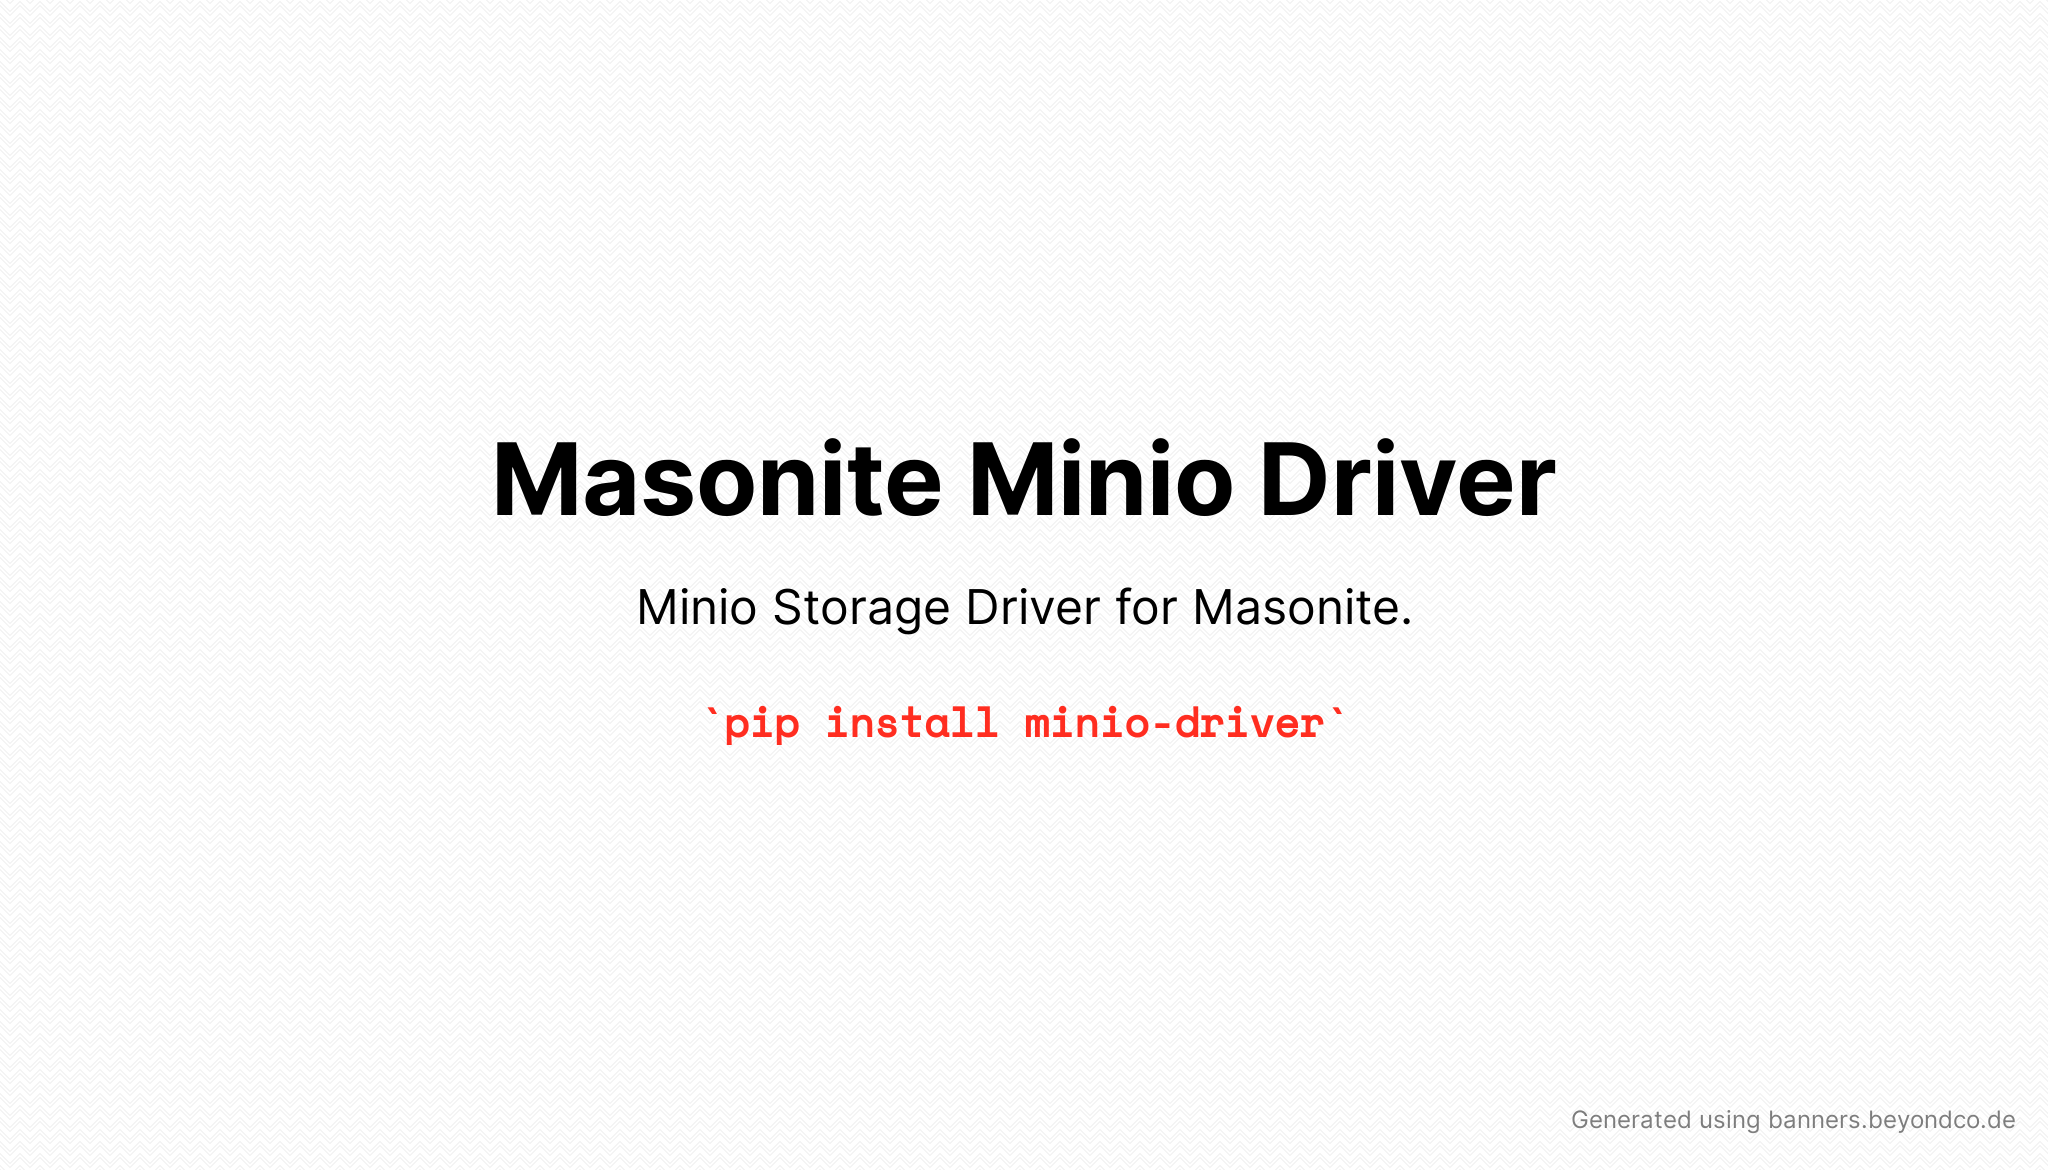 Masonite Minio Driver